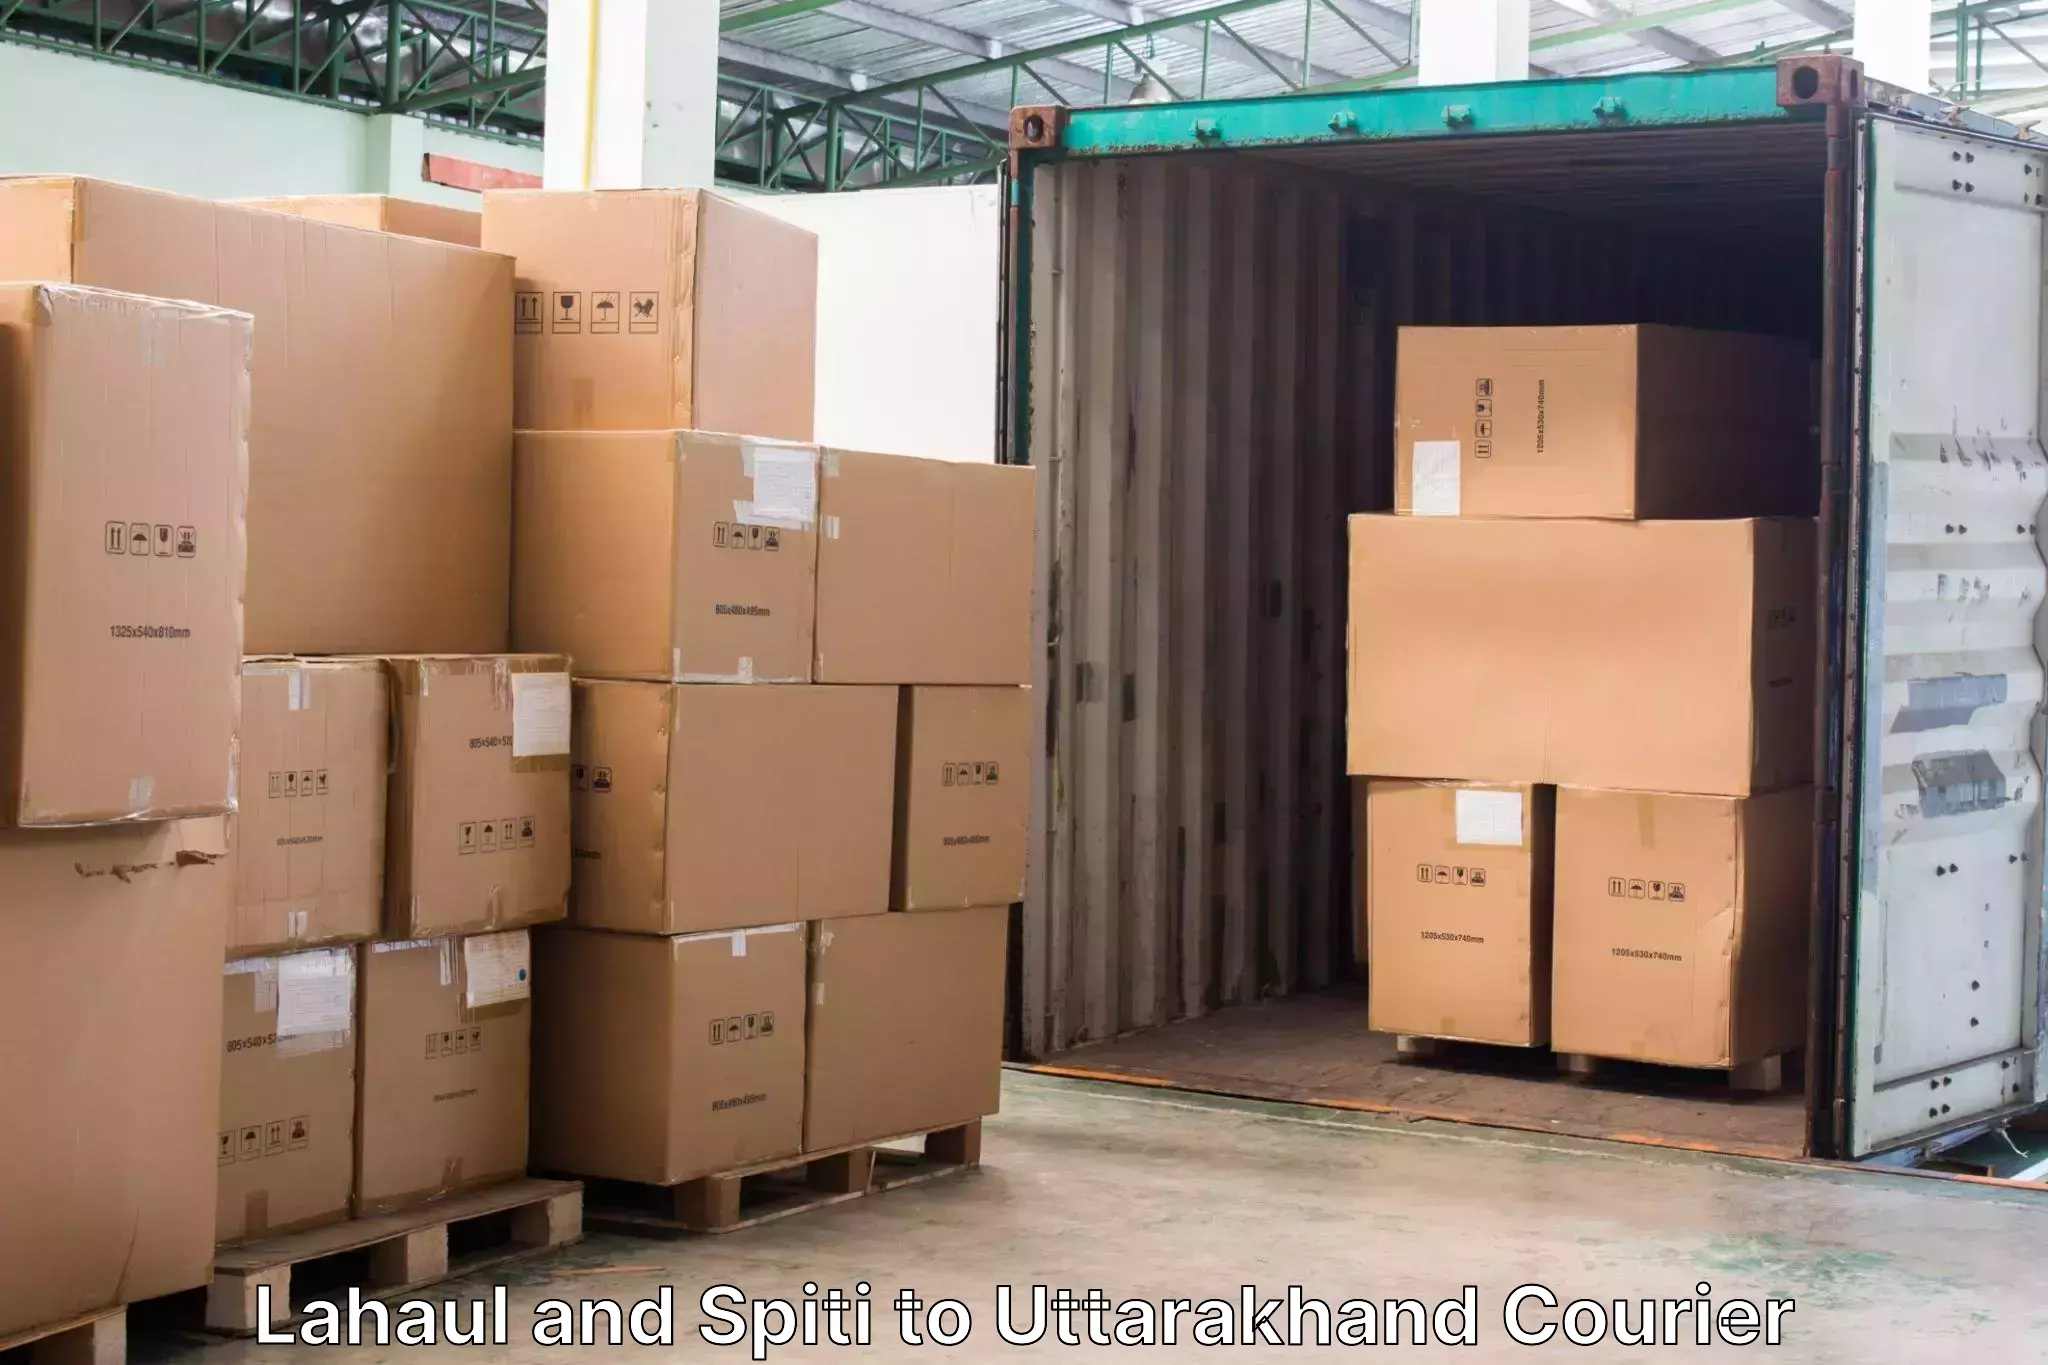 Luggage shipment tracking Lahaul and Spiti to Uttarakhand